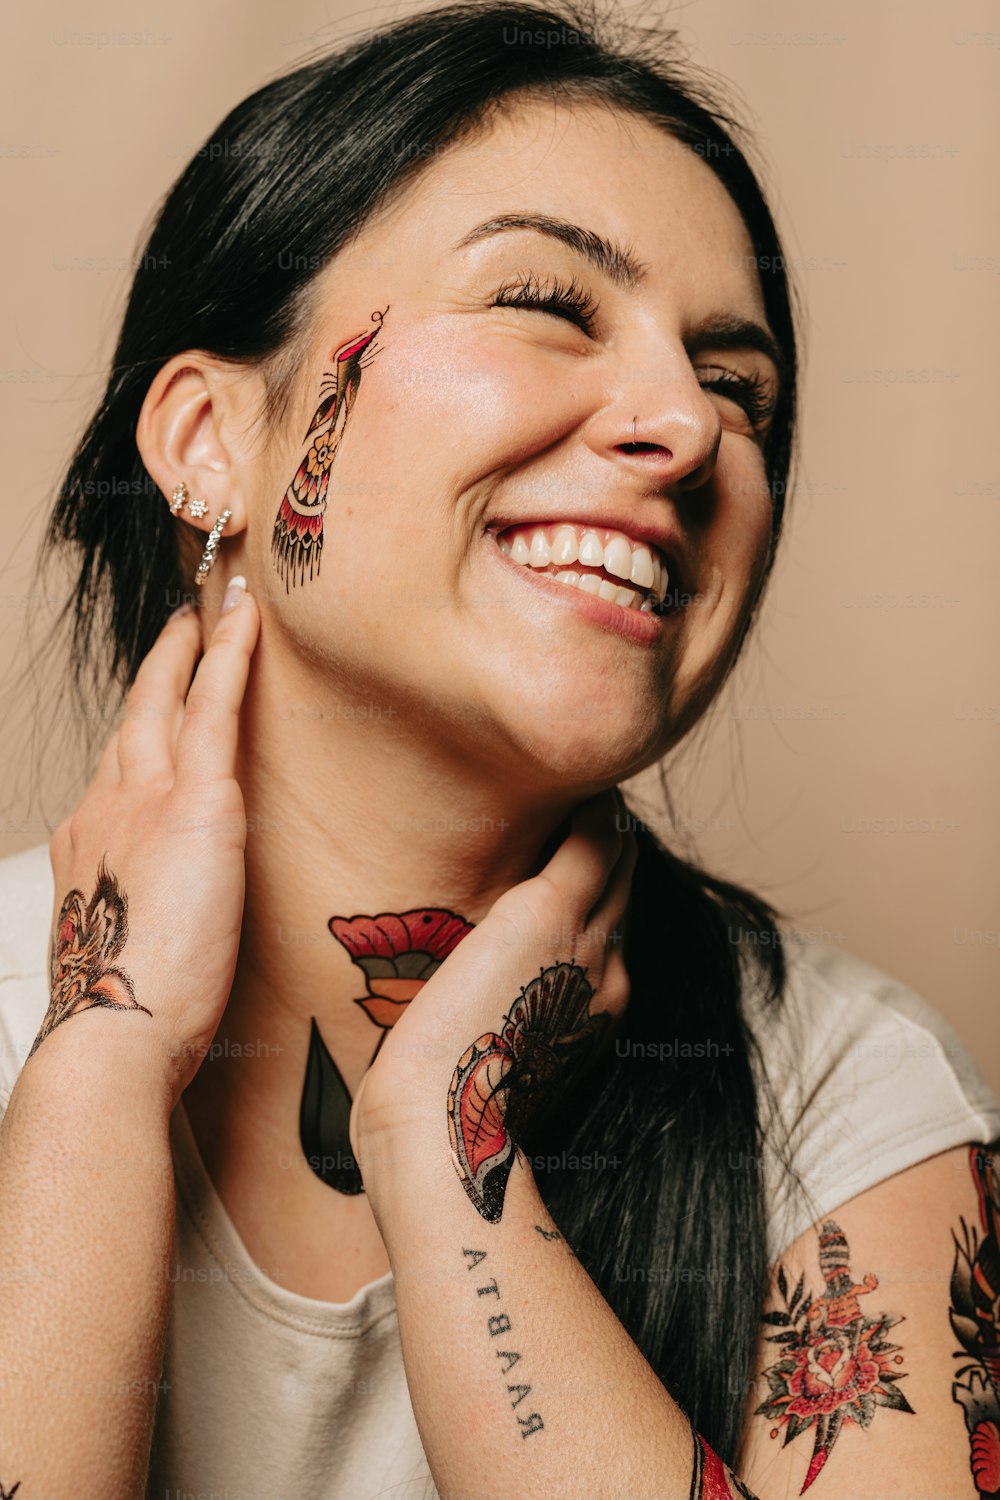 una mujer con tatuajes en la cara sonriendo